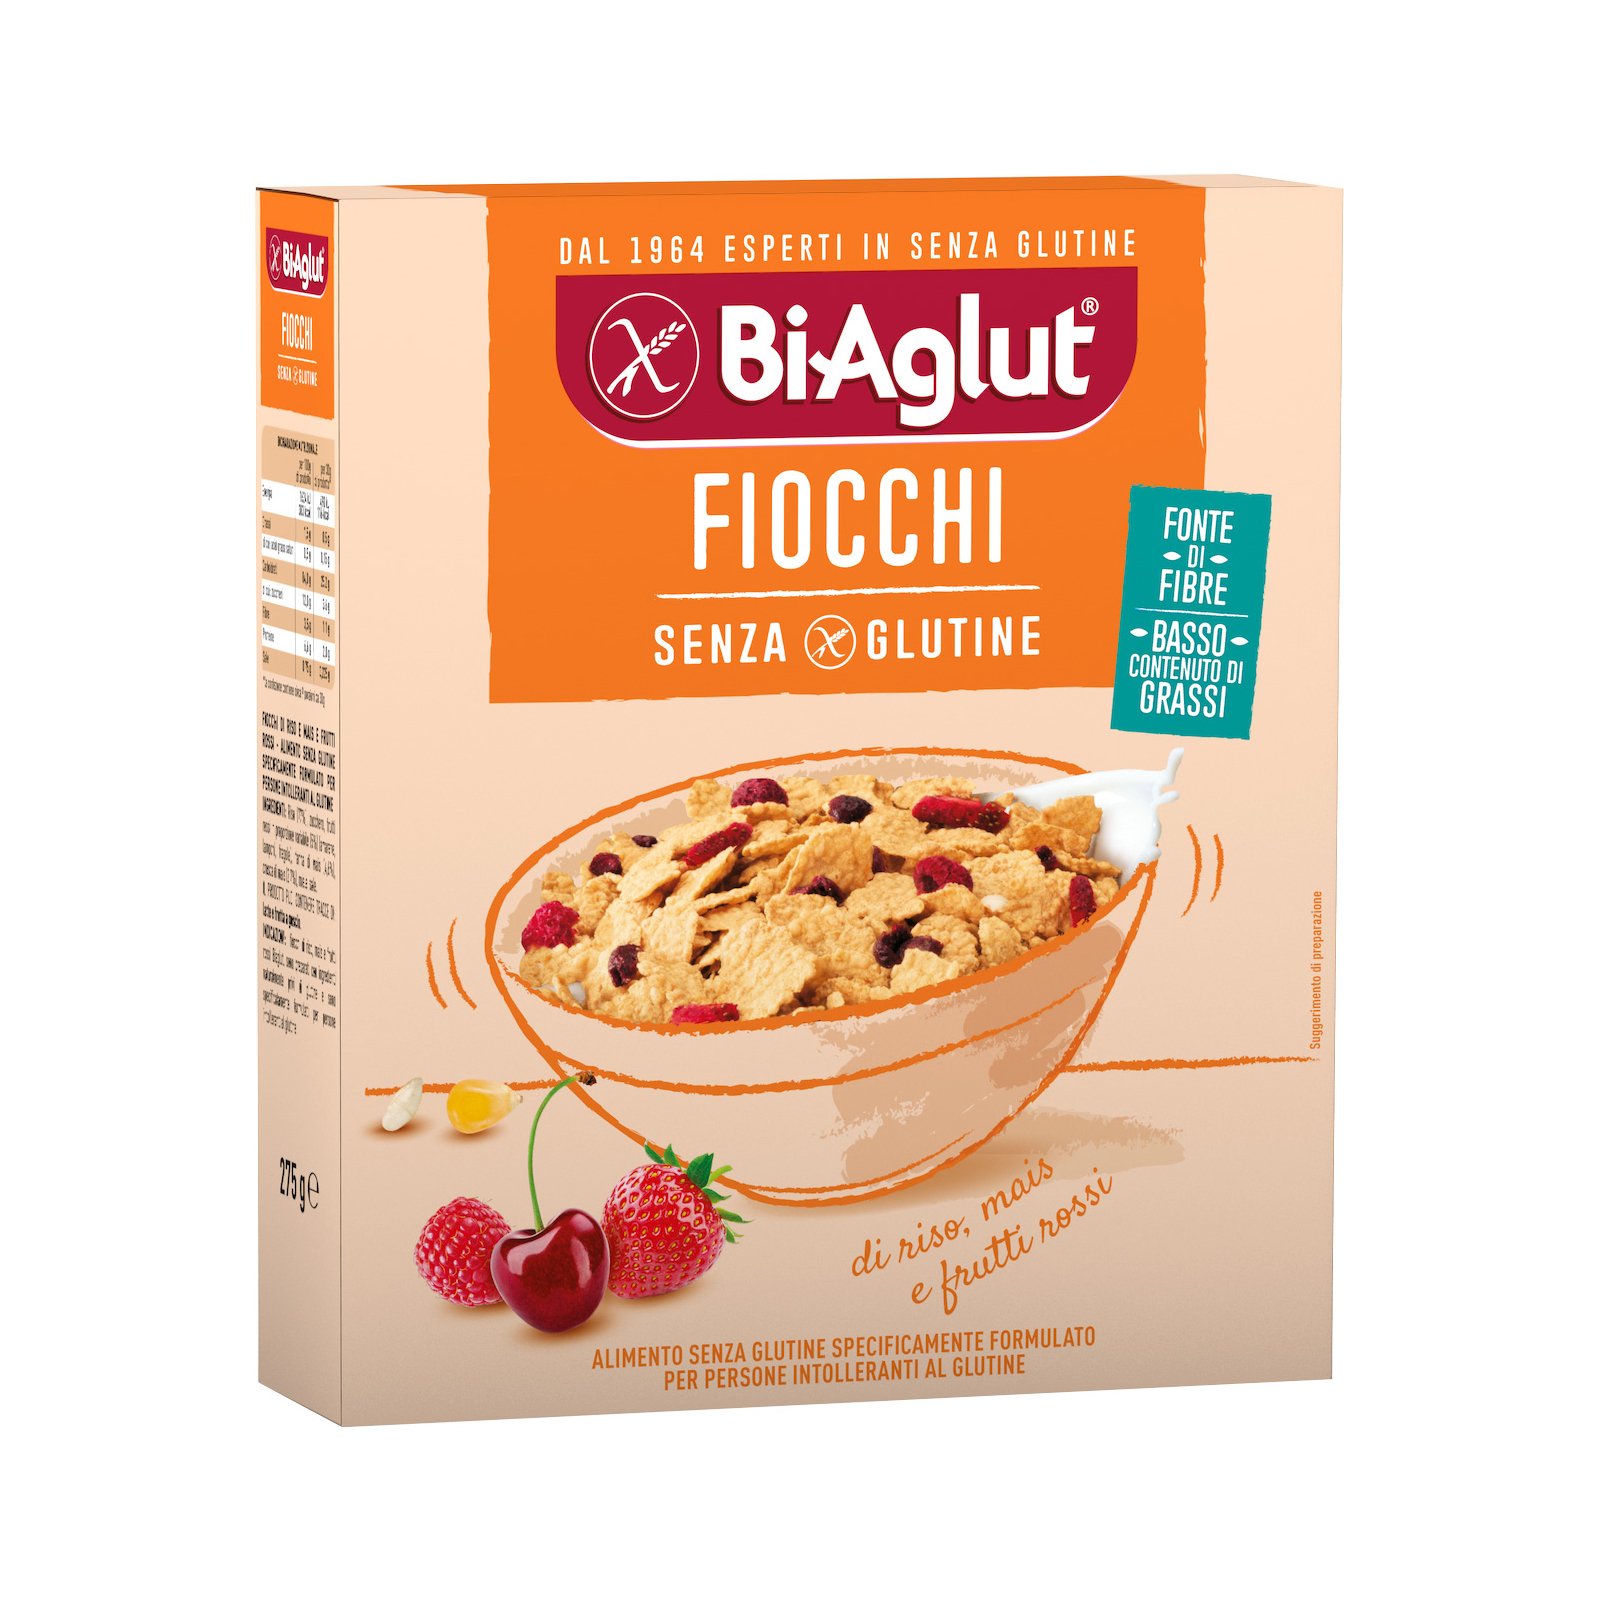 Сухий сніданок BiAglut Fiocchi Пластівці з рису, кукурудзи та червоними ягодами без глютену 275 г (1136530)